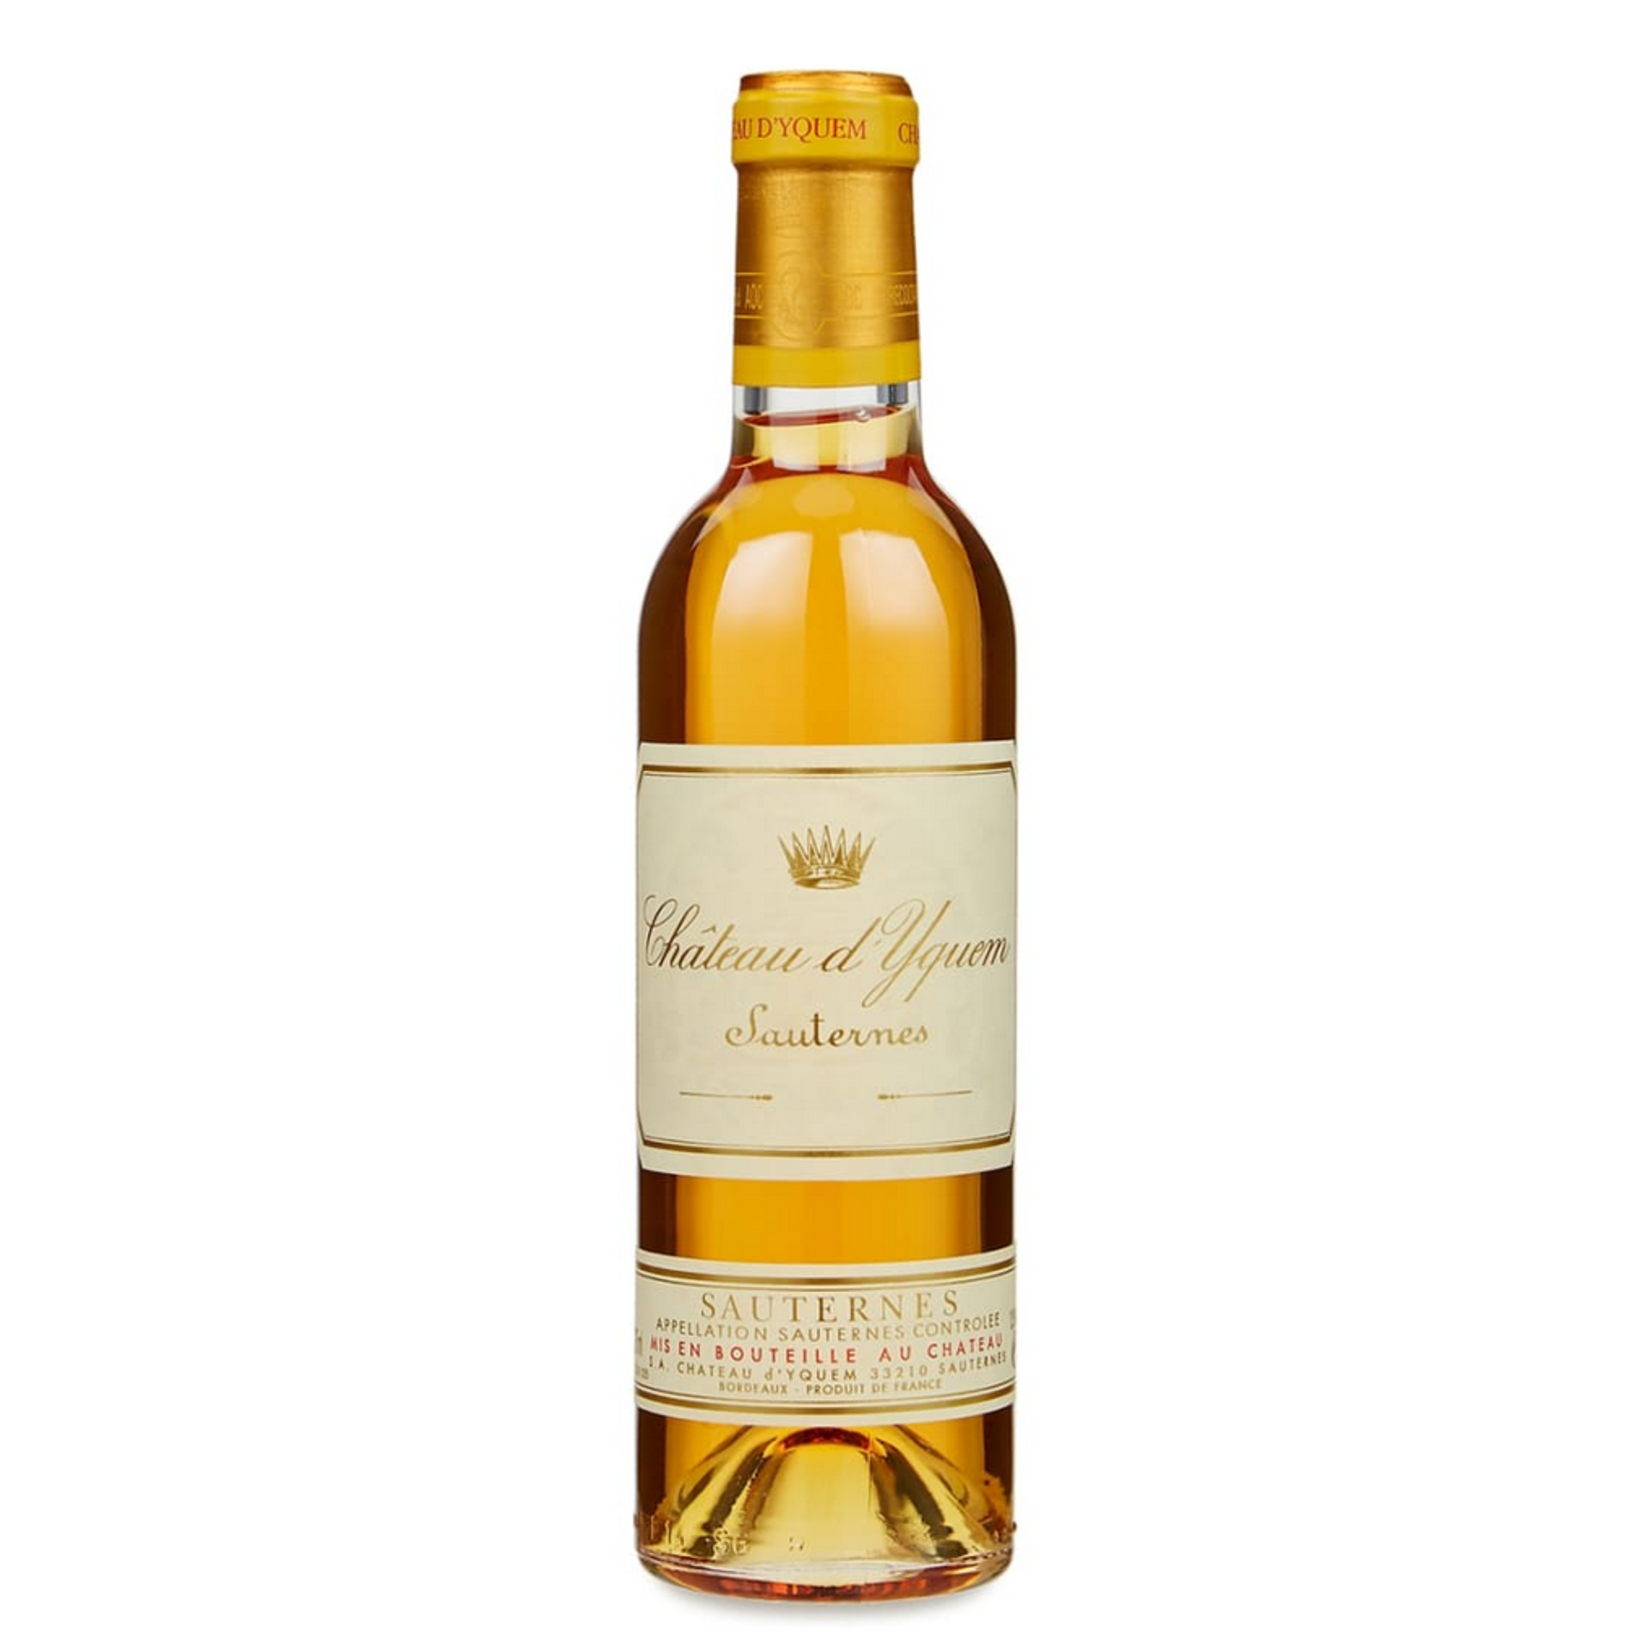 2011, 375ml Chateau d'Yquem, Semillon- Sauvignon Blanc Blend, Sauternes, Bordeaux, France, 14% Alc, CT96, WS99